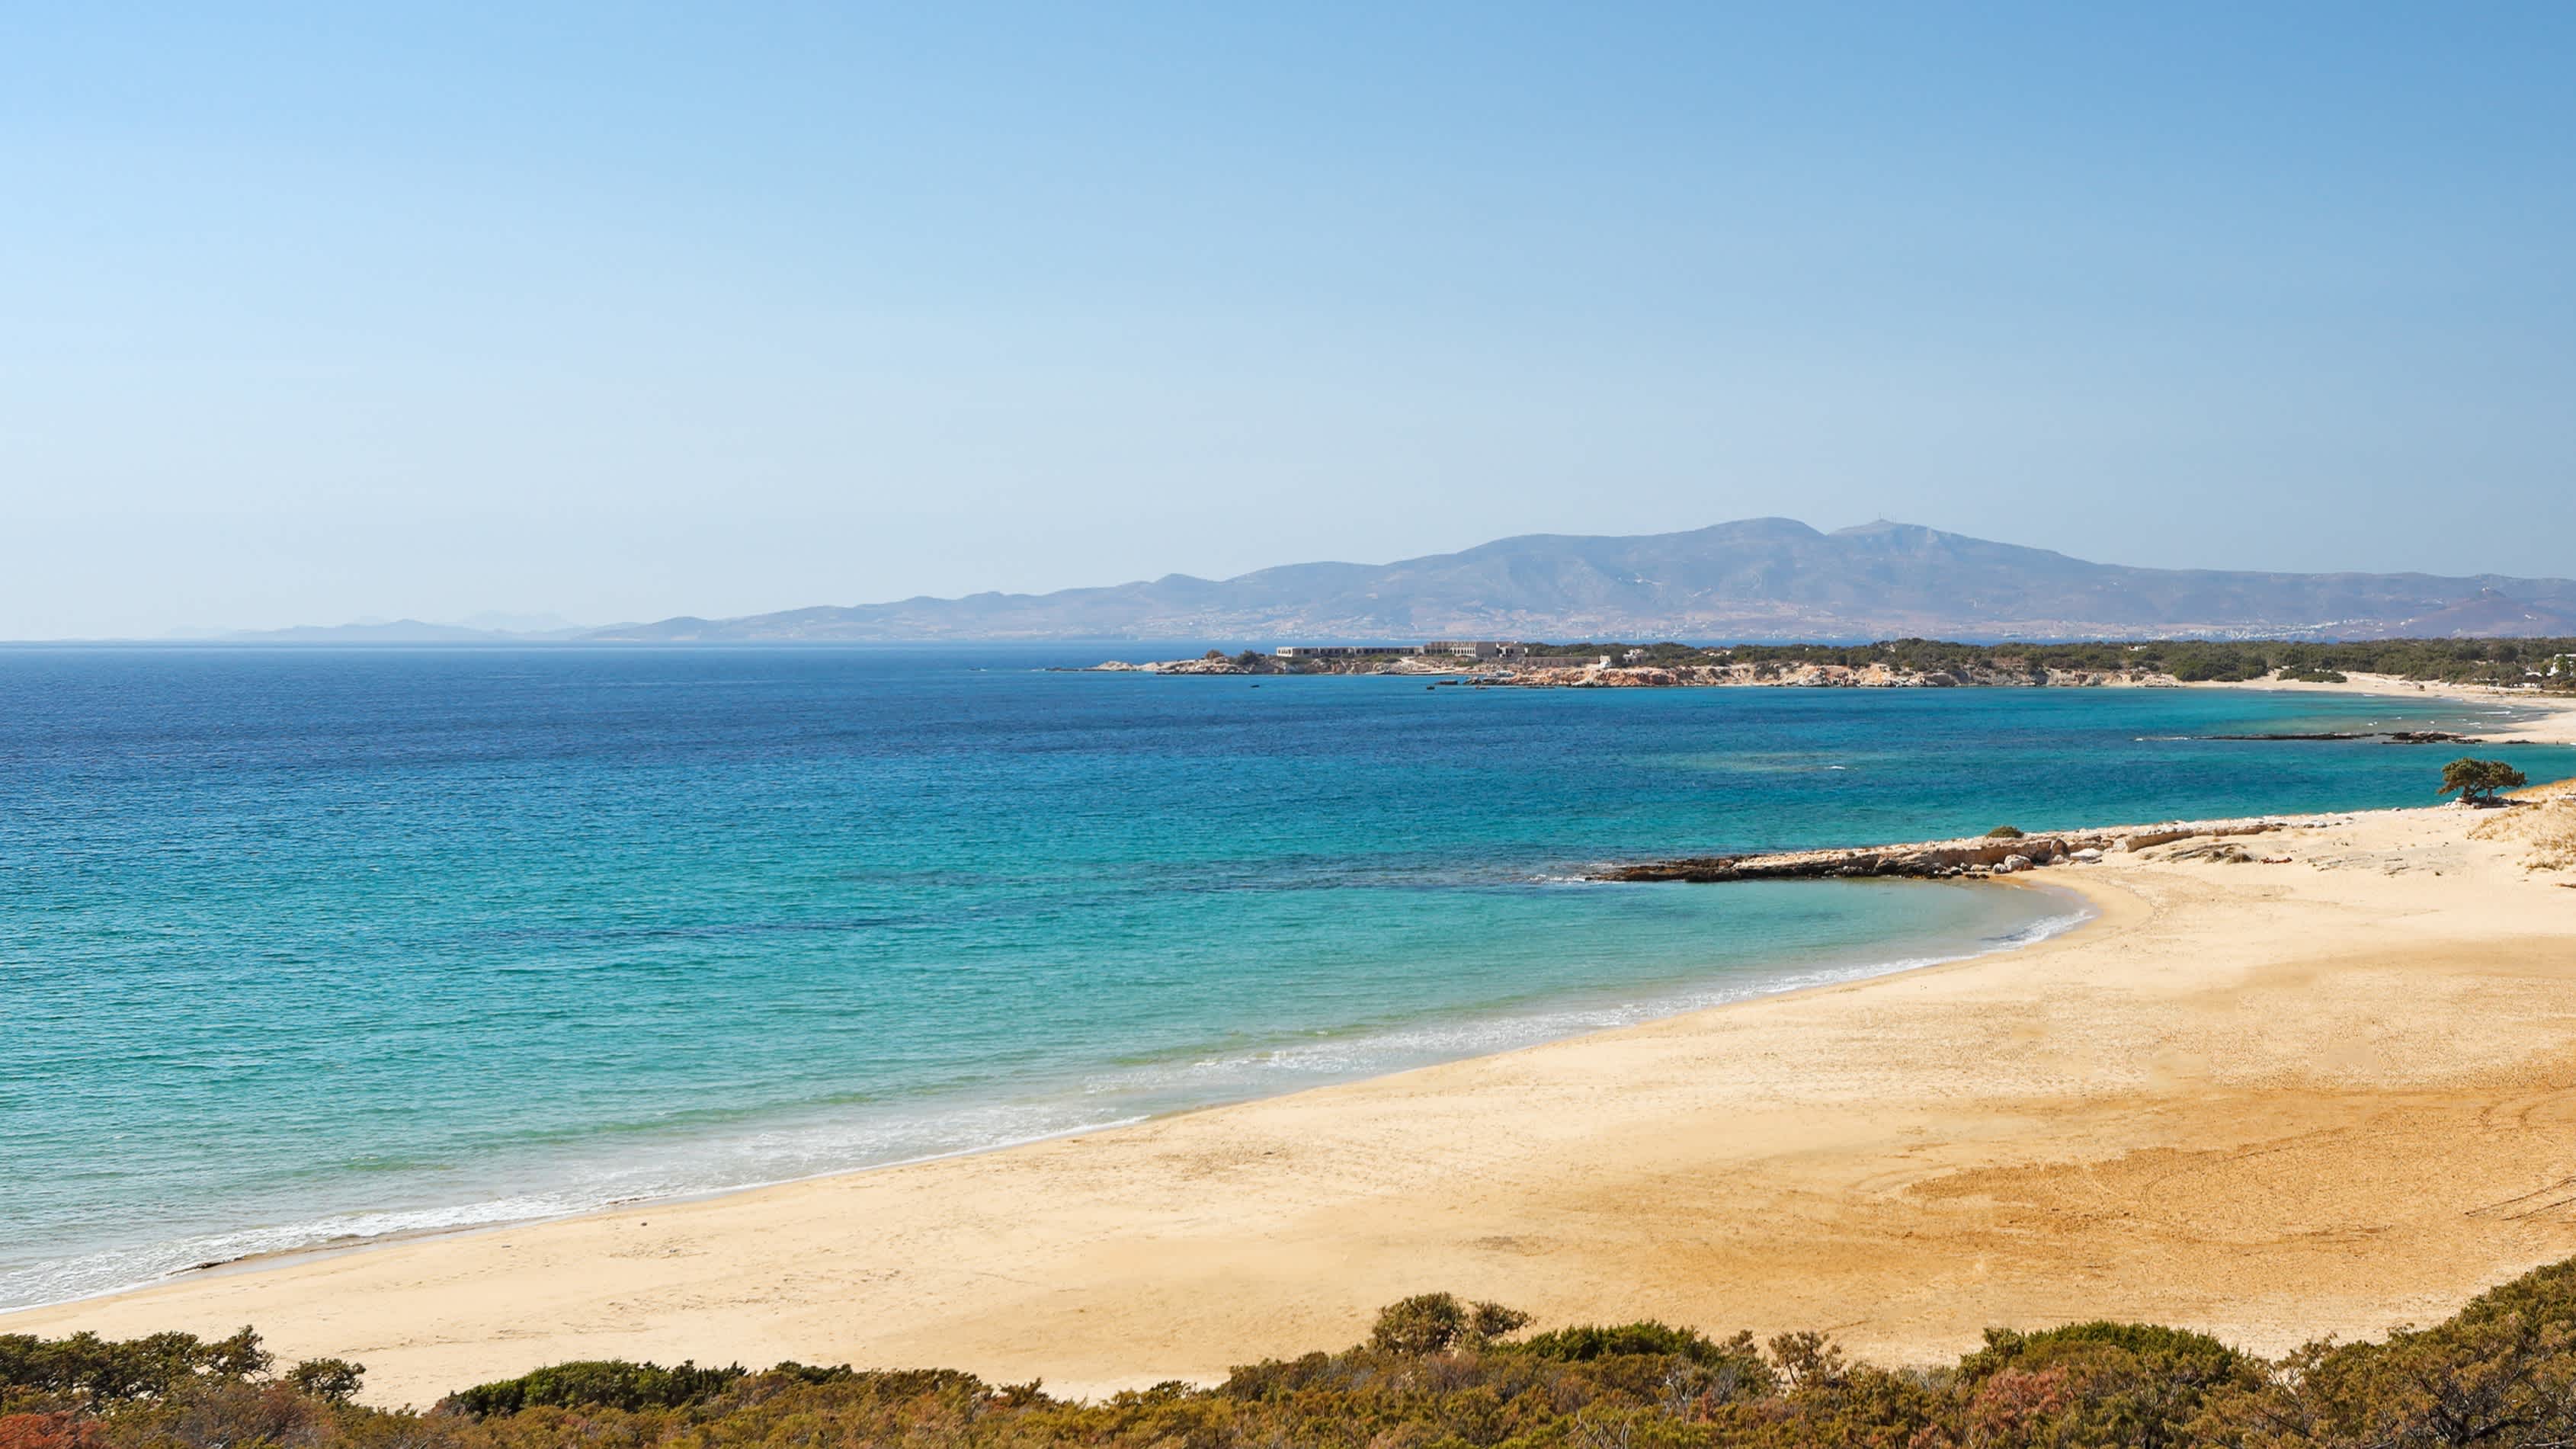 Der Sandstrand Pyrgaki auf Naxos, Griechenland, mit goldgelbem Sand und türkisblauem Meer.